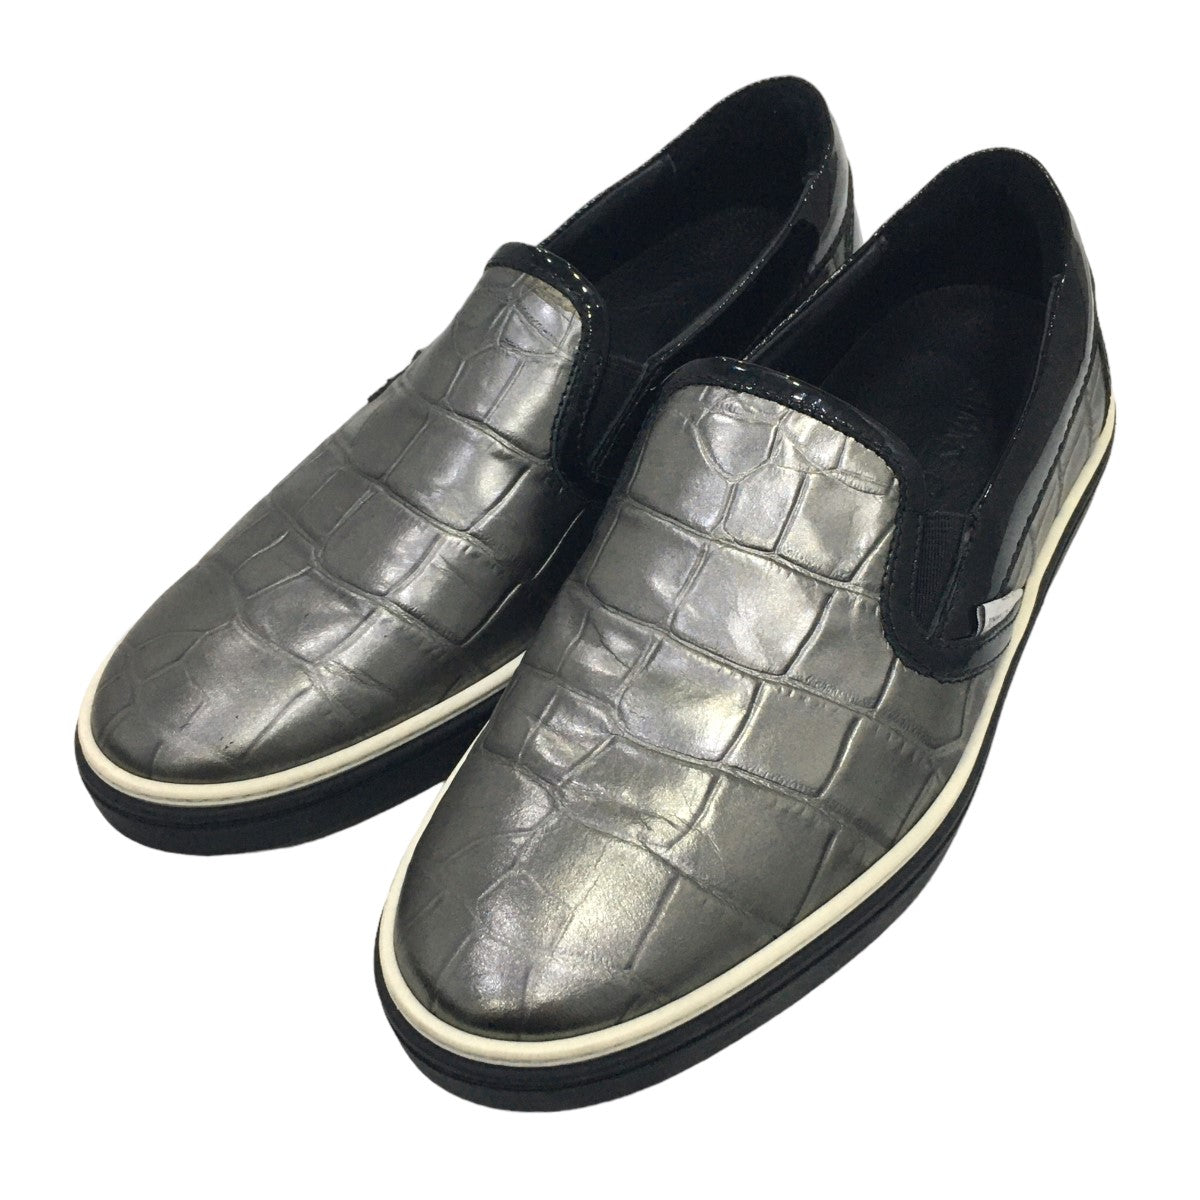 セール在庫【極美品】JIMMY CHOO スリッポン GROVE ブラック(クロコ調) 靴